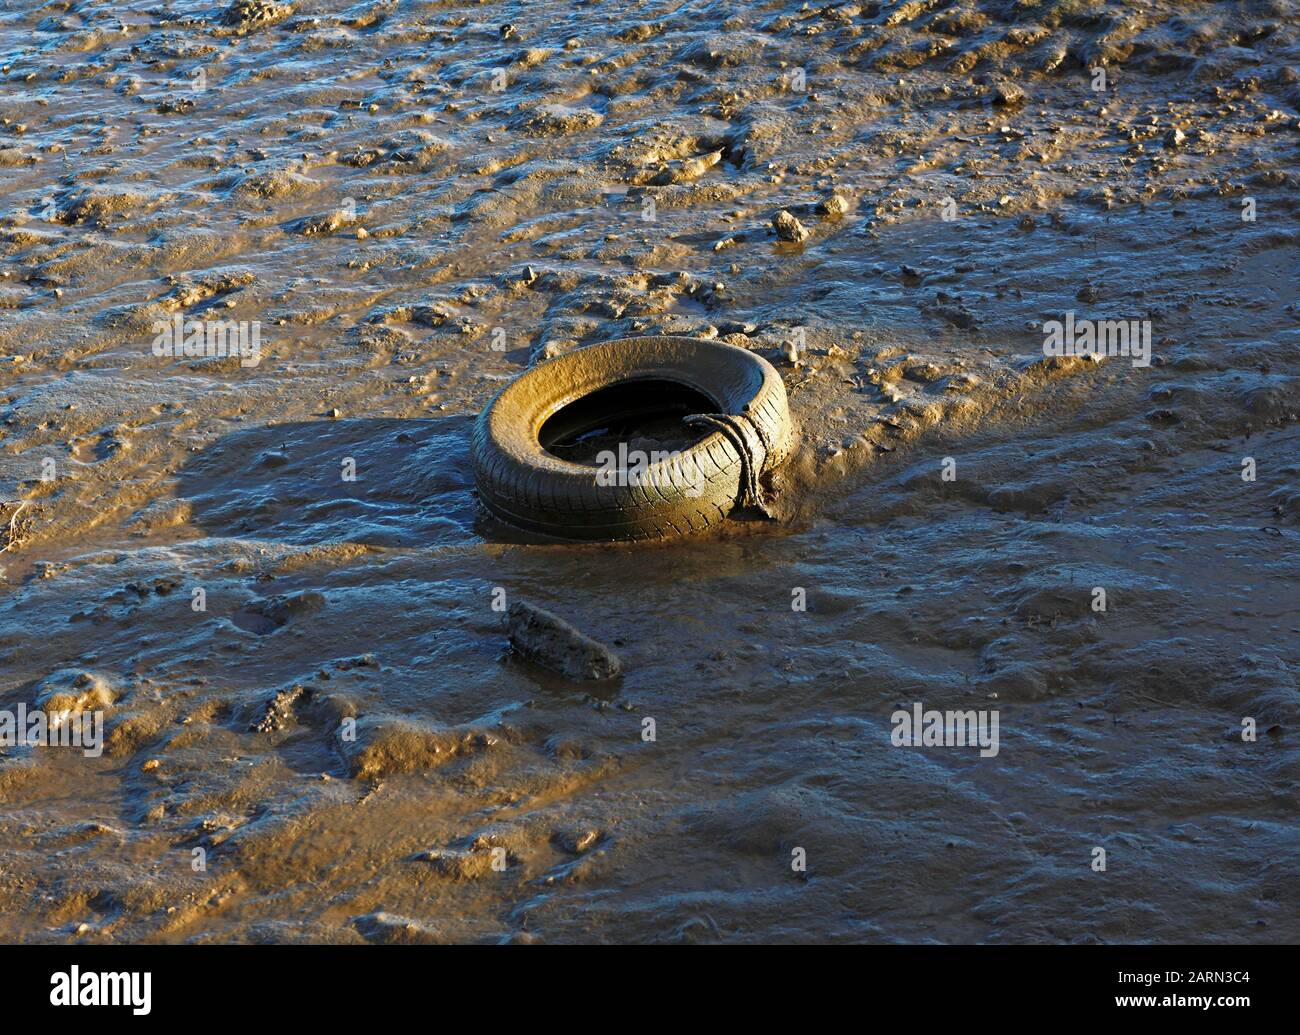 Un vieux pneu en caoutchouc jeté utilisé comme aile de bateau dans la boue à Burnham Overy Staithe, Norfolk, Angleterre, Royaume-Uni, Europe. Banque D'Images